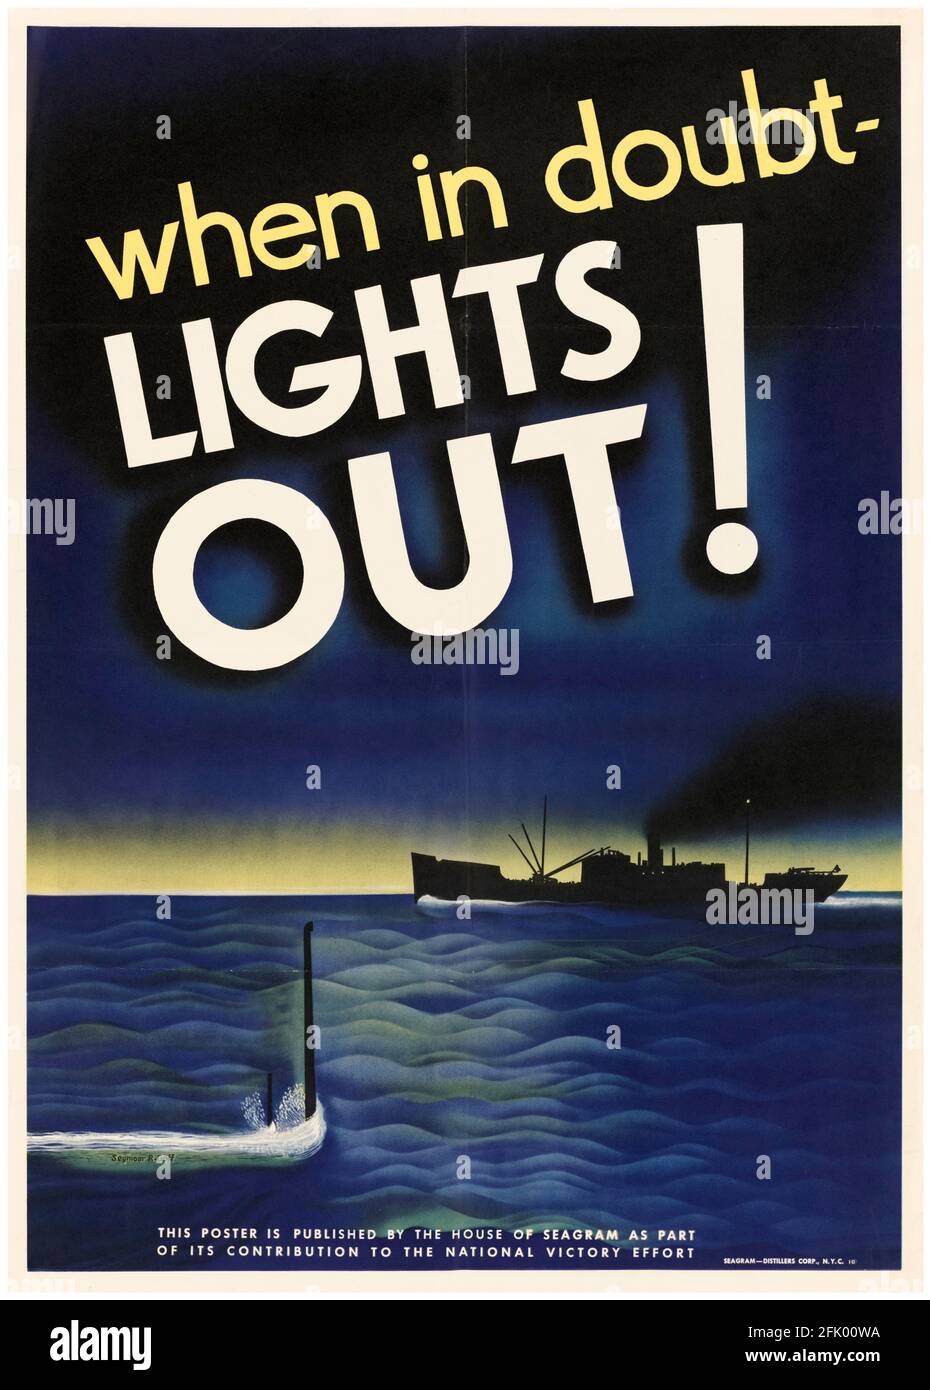 Quand dans le doute: Lumières dehors!, américain, WW2 anti-sous-marine poster pour la marine marchande, 1942-1945 Banque D'Images